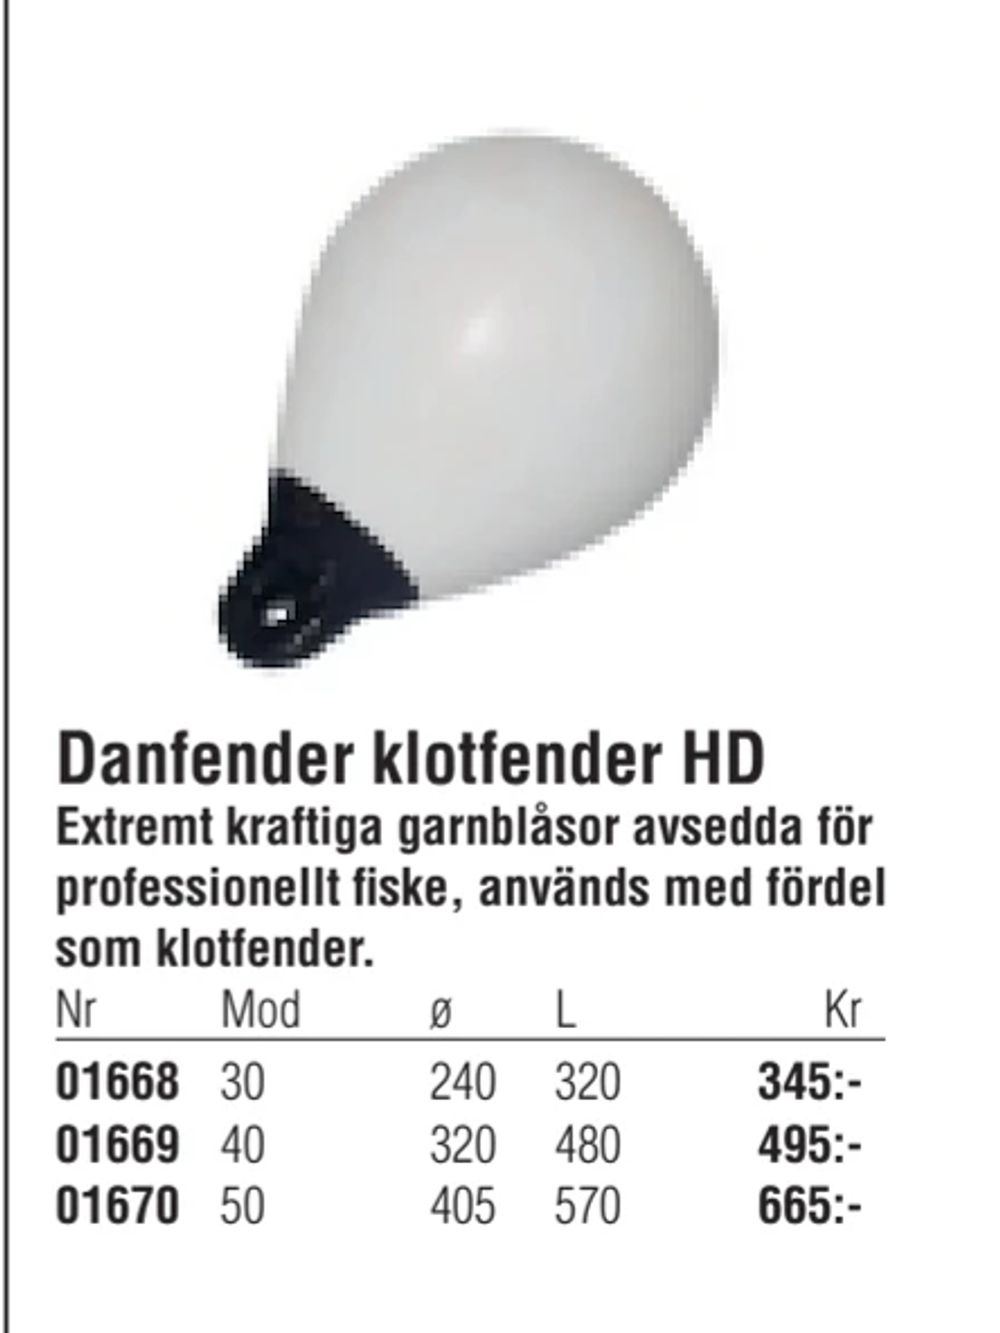 Erbjudanden på Danfender klotfender HD från Erlandsons Brygga för 345 kr